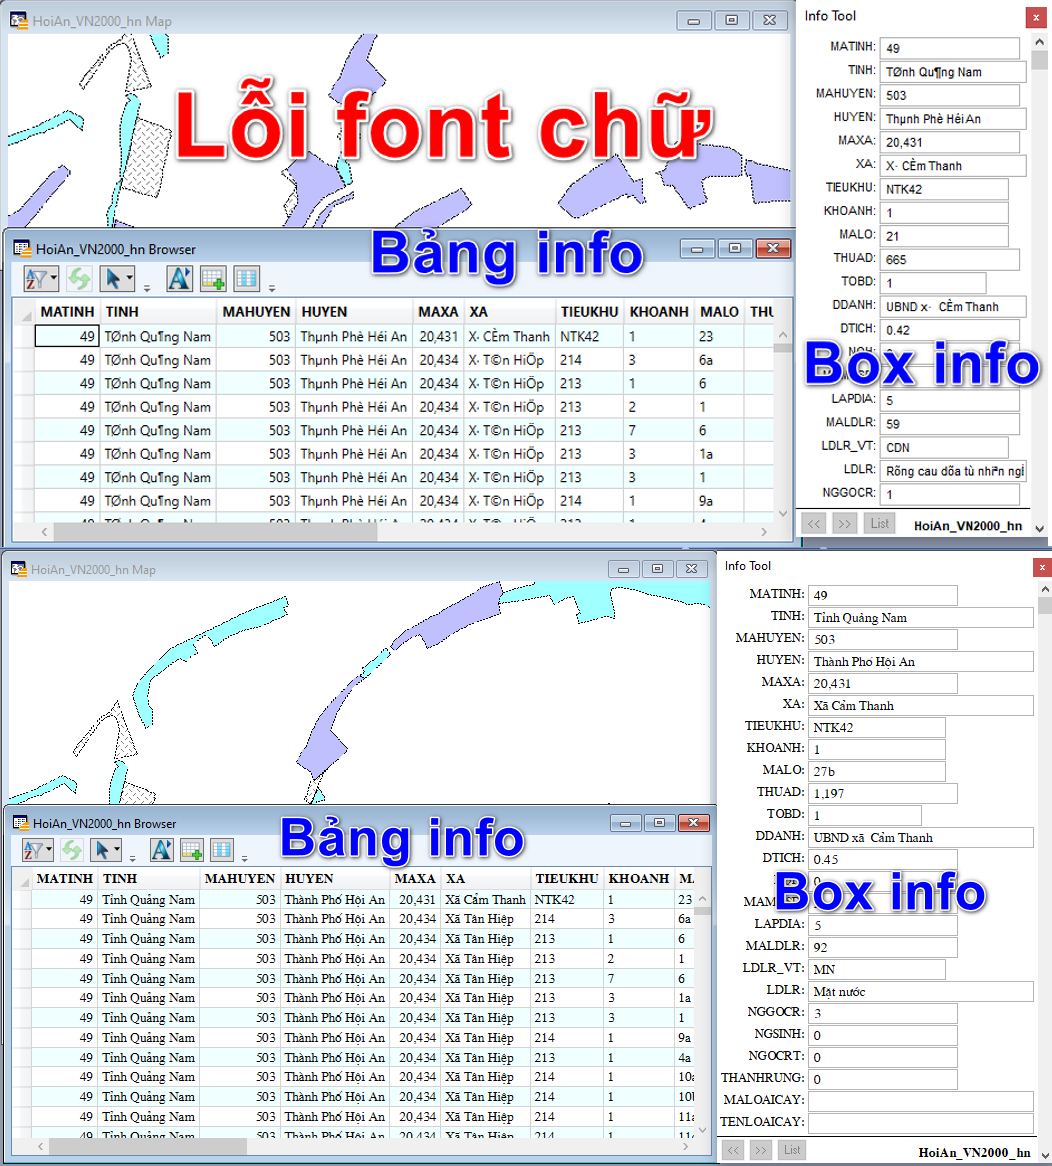 Sửa lỗi font tiếng Việt không còn là một vấn đề khi bạn đã sử dụng đến các ứng dụng và công cụ đầy đủ và được cập nhật mới nhất. Hãy để chúng tôi giúp bạn giải quyết vấn đề này và mang lại trải nghiệm sử dụng mượt mà và dễ dàng hơn.